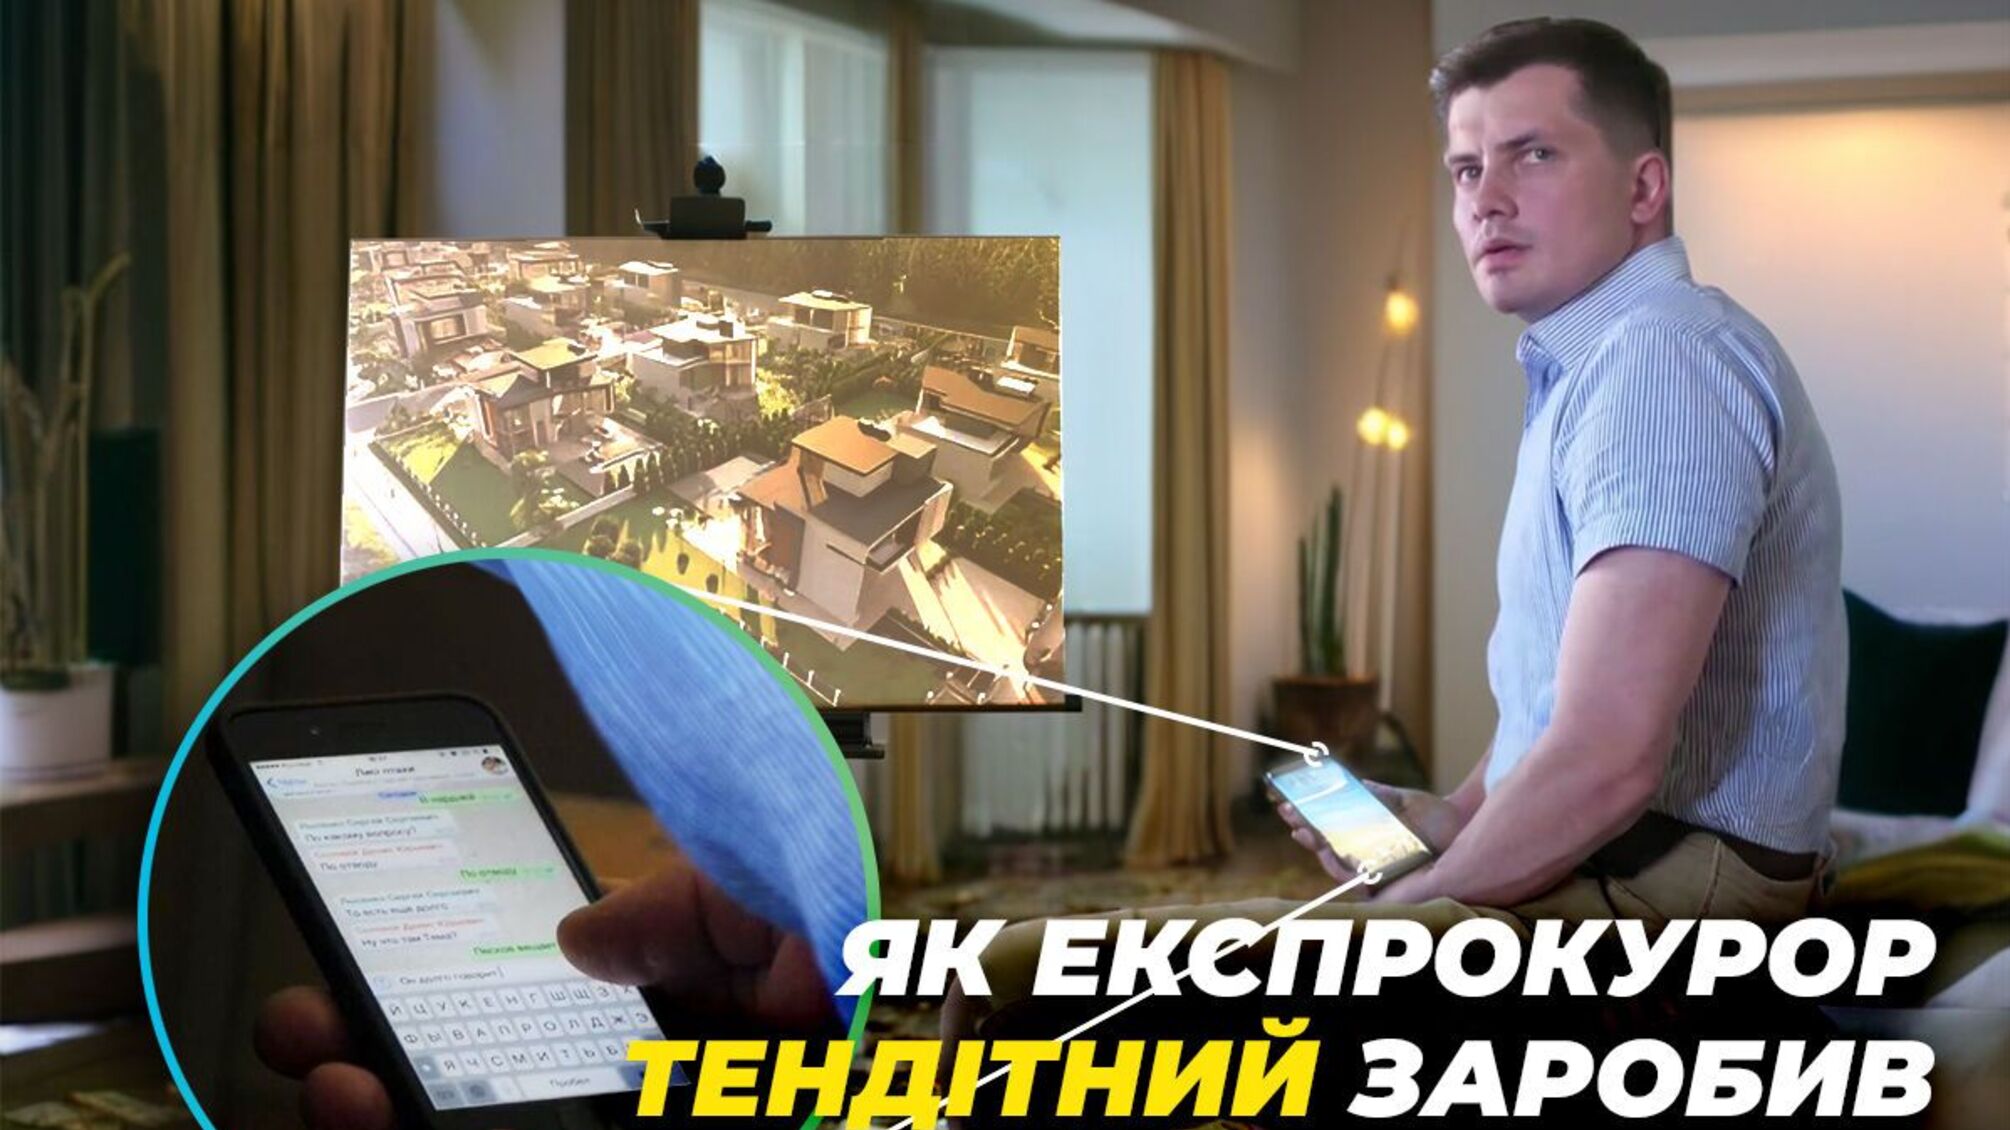 SMS-договорняки и элитные коттеджи под Киевом: как экс-прокурор Тендитный заработал миллионное состояние